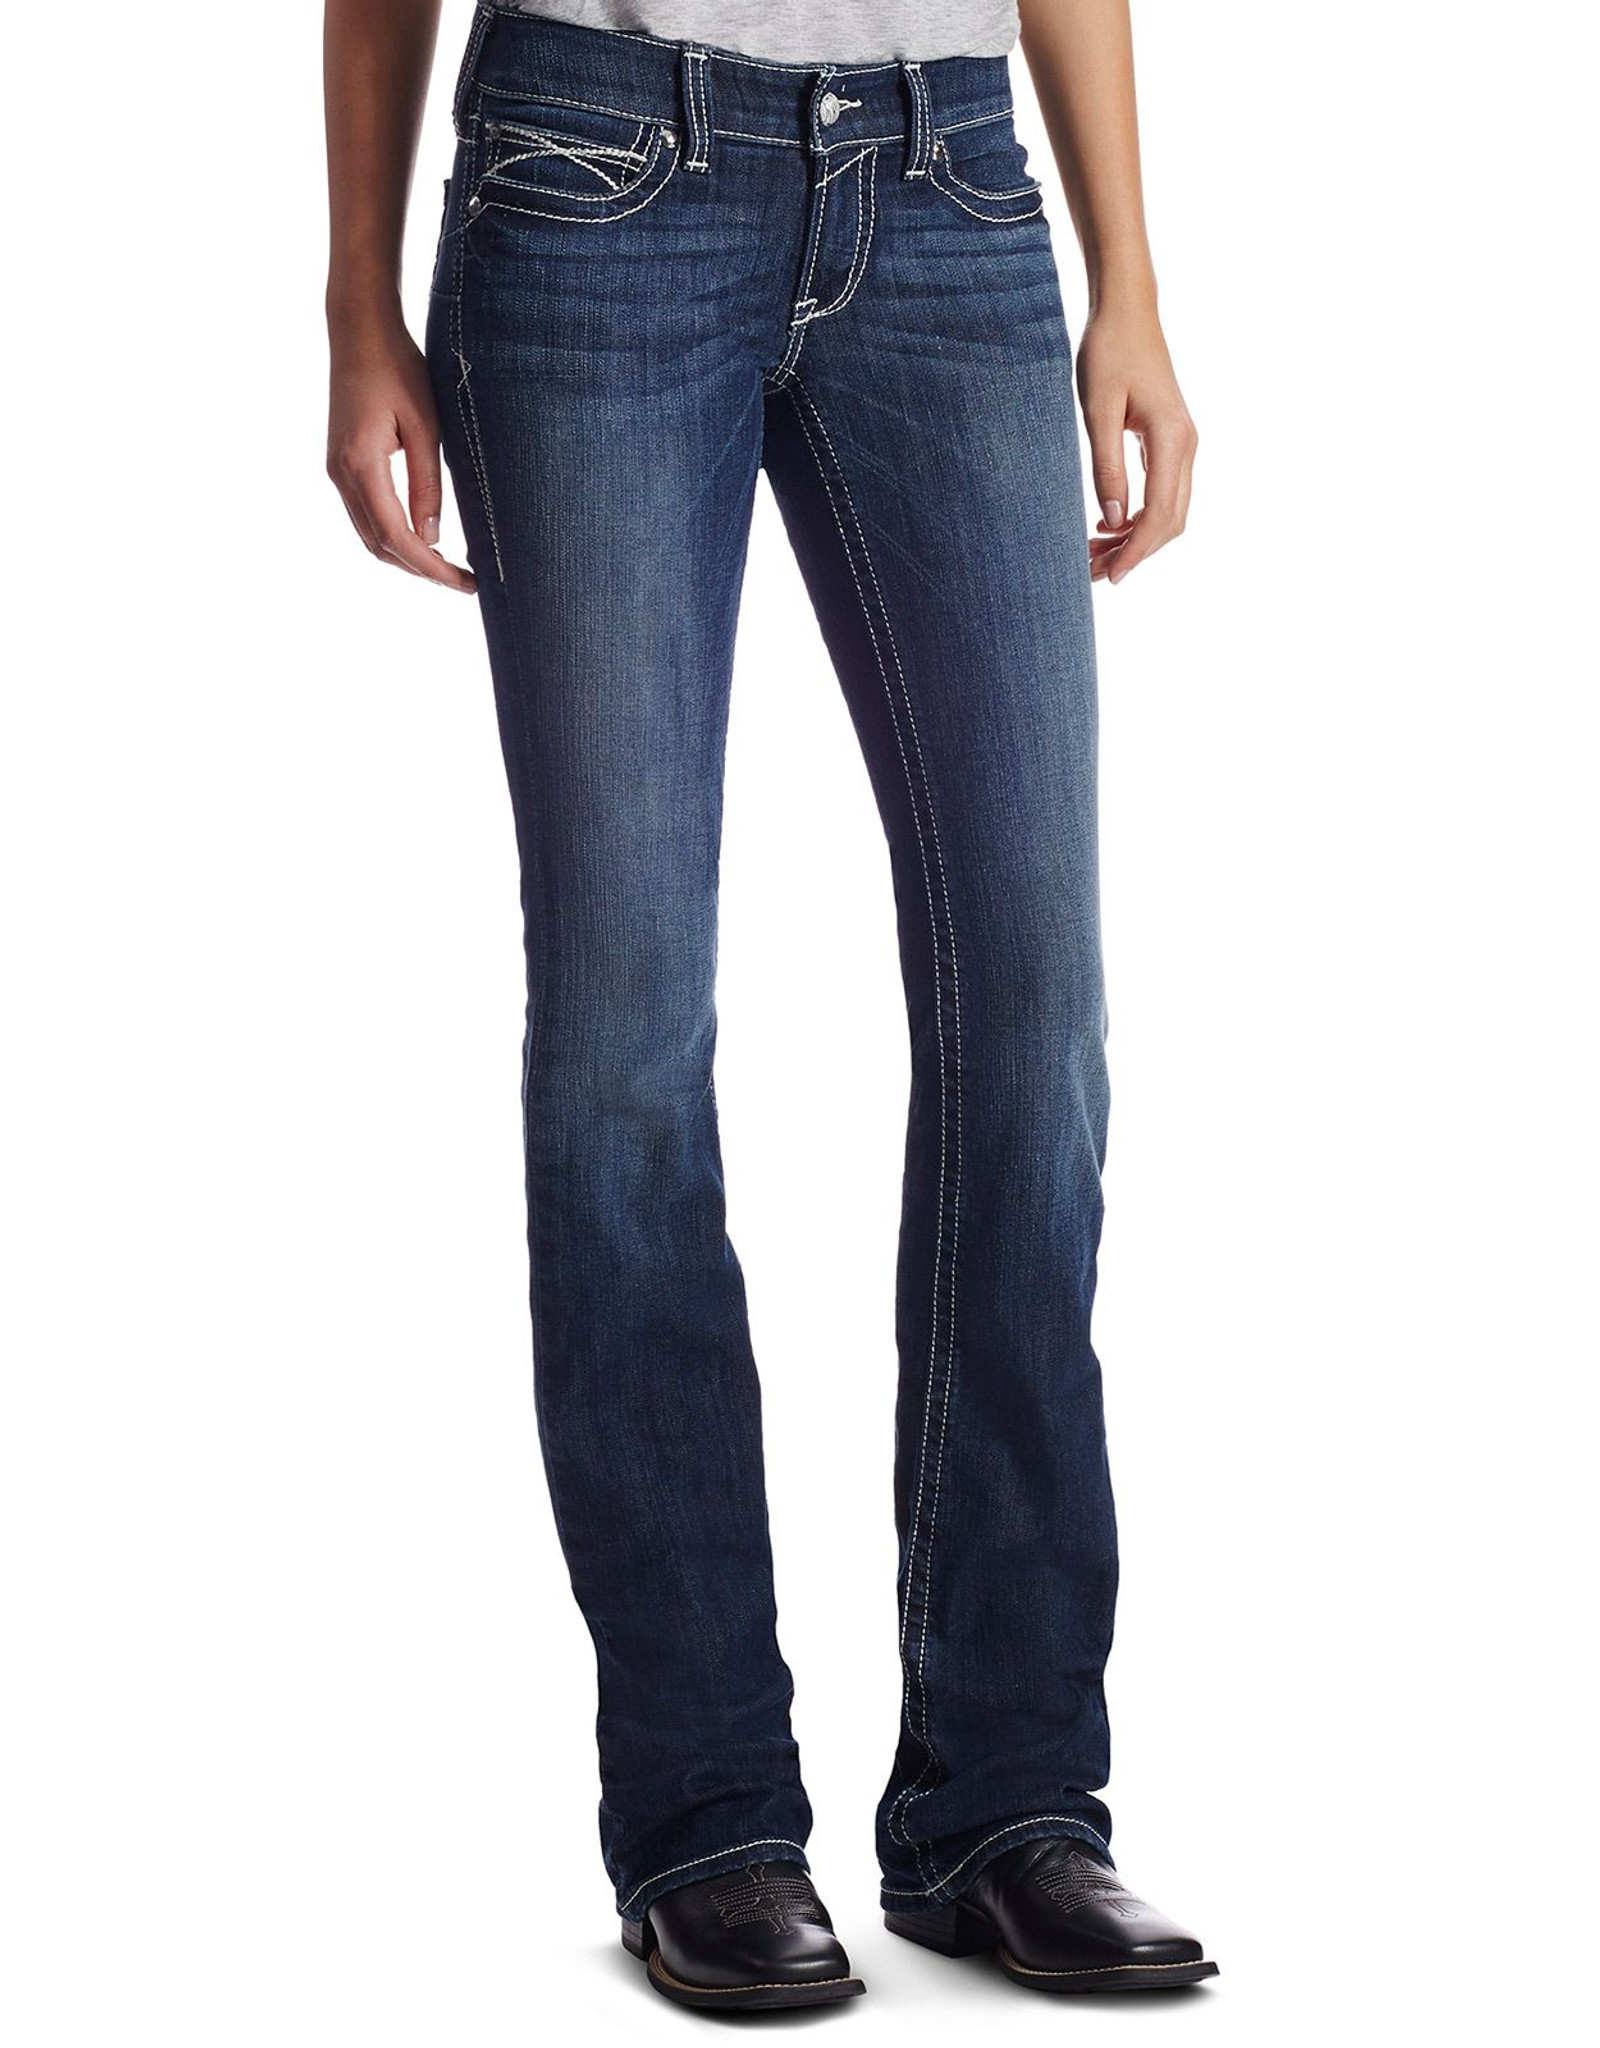 Ariat Women's R.E.A.L. Low Rise Slim Fit Boot Cut Jeans - Lakeshore